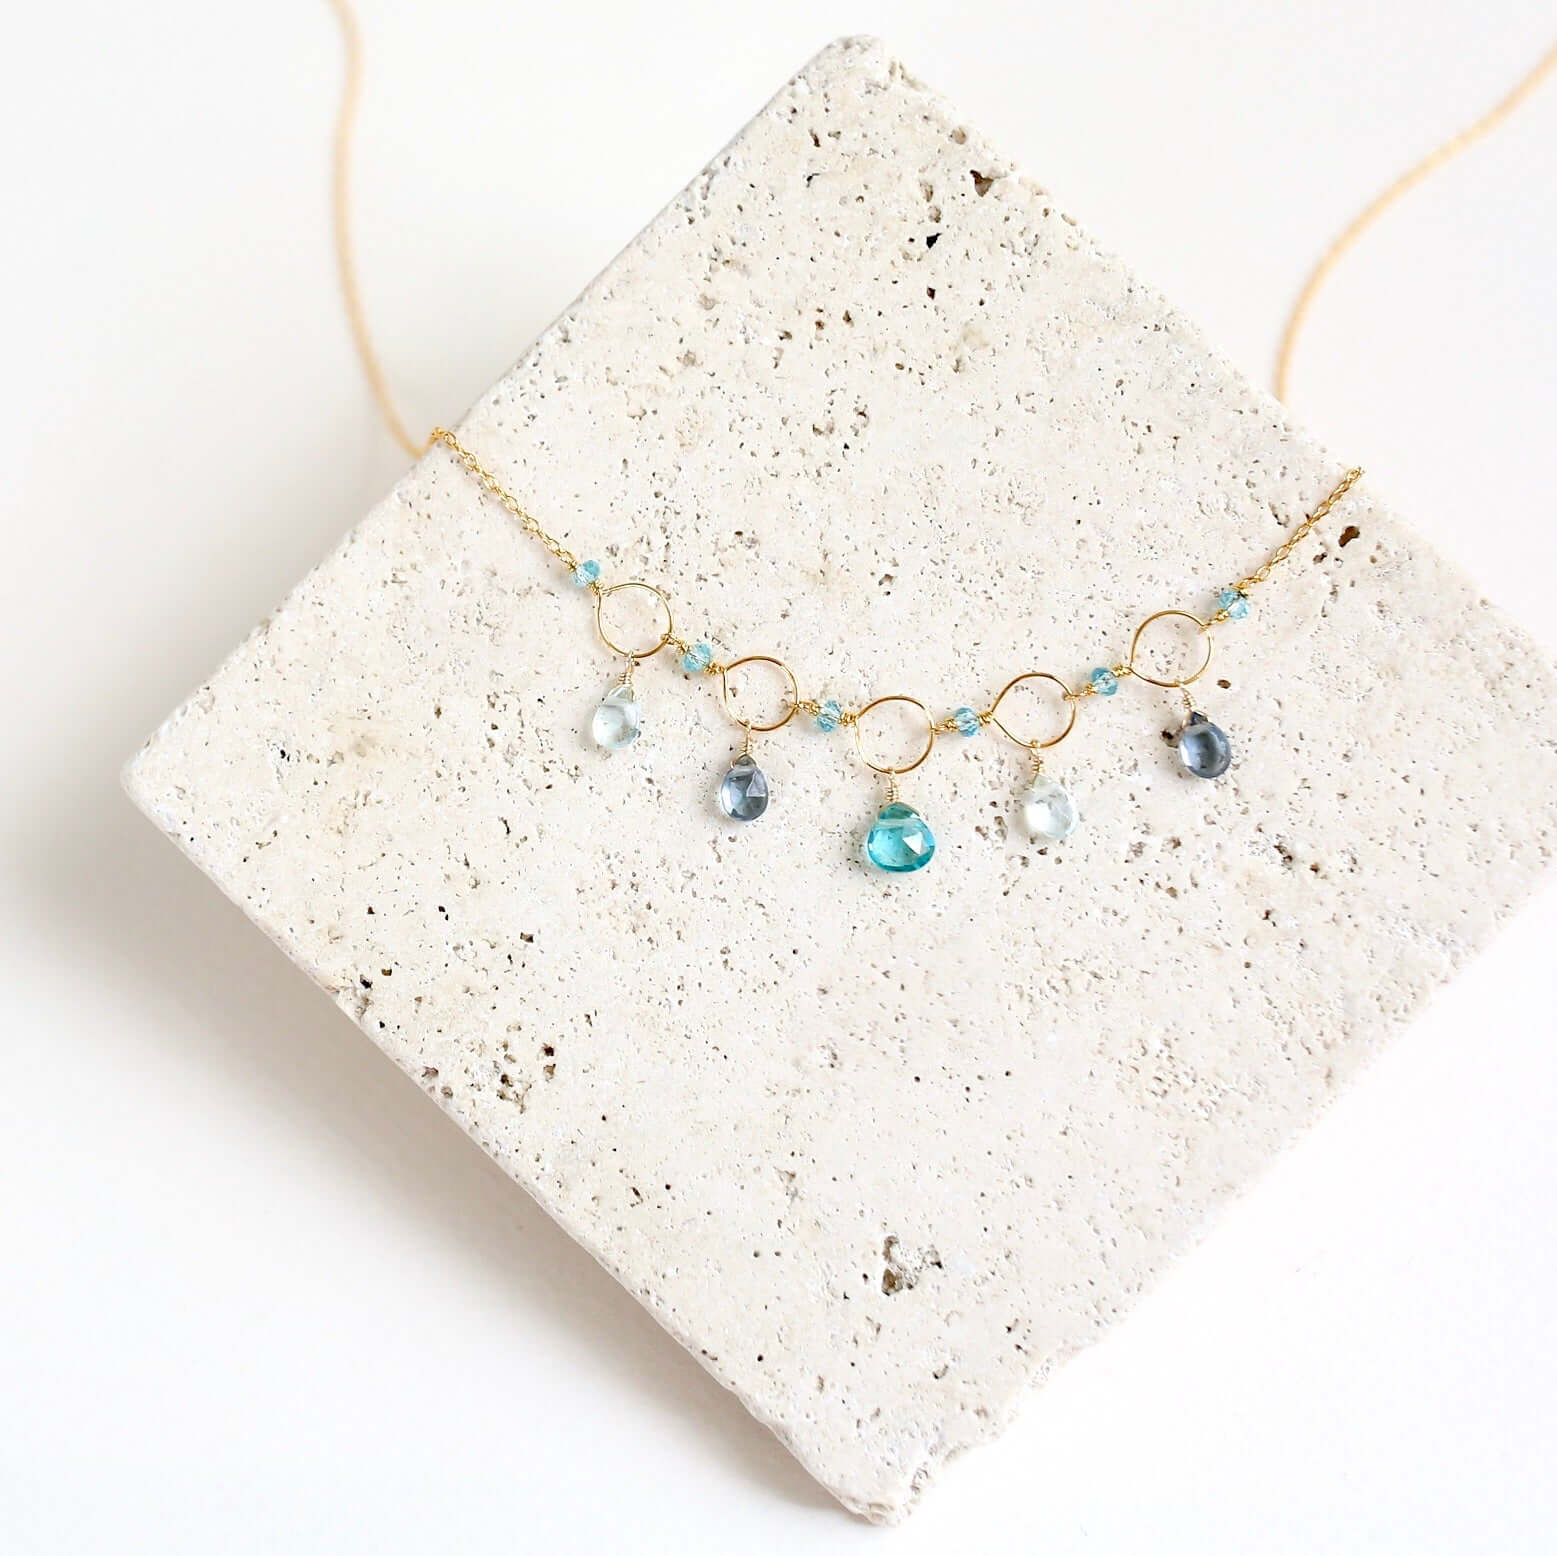 Radiant Gemstone Gold Necklace - Aquamarine, Iolite, and Aqua Blue Quartz